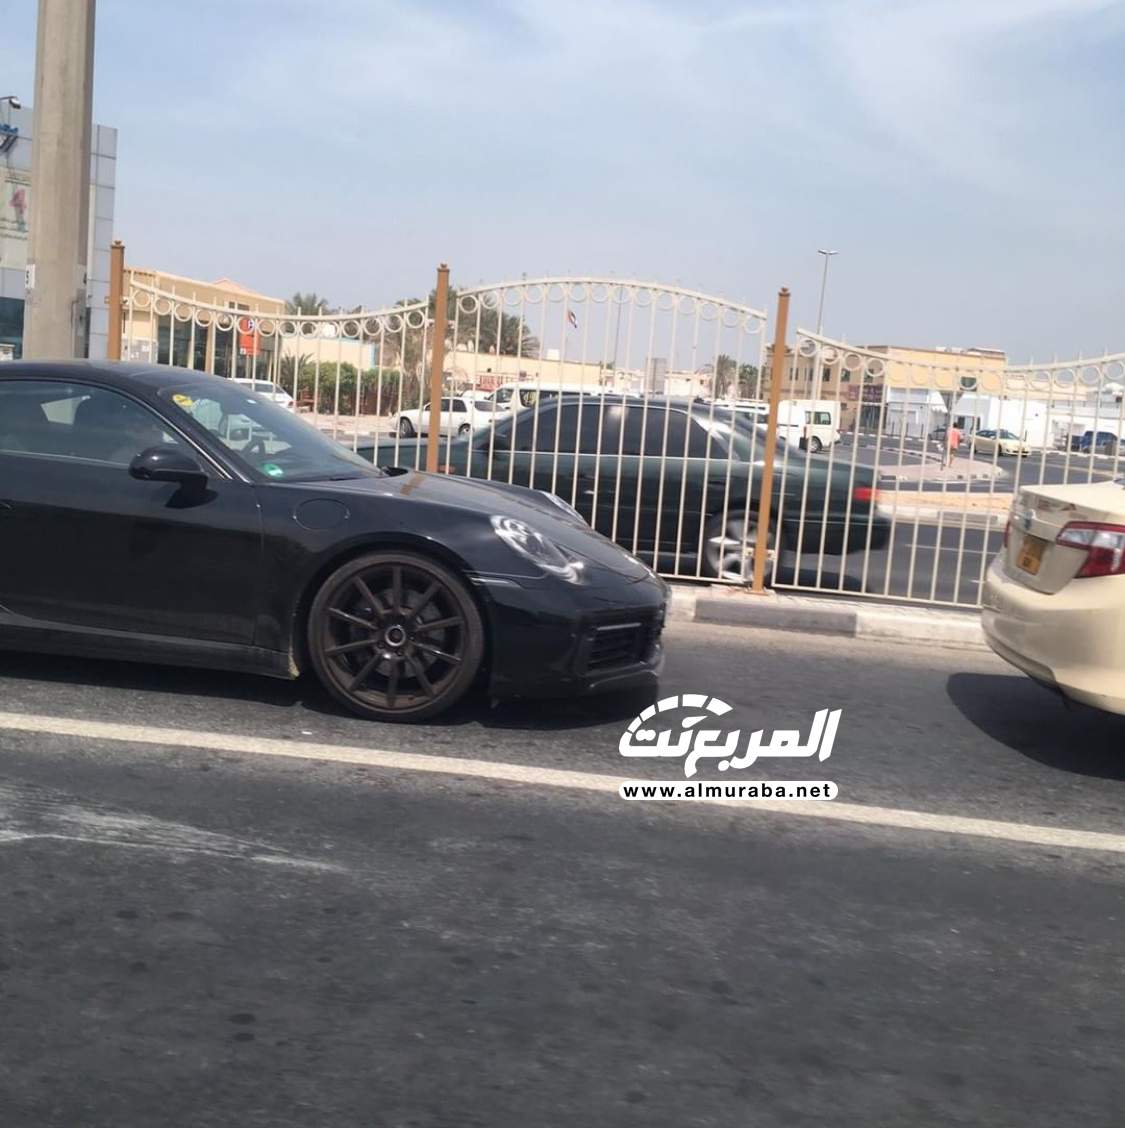  “بالصور” بورش 911 الجديدة كلياً تختبر نفسها في شوارع مدينة دبي 112